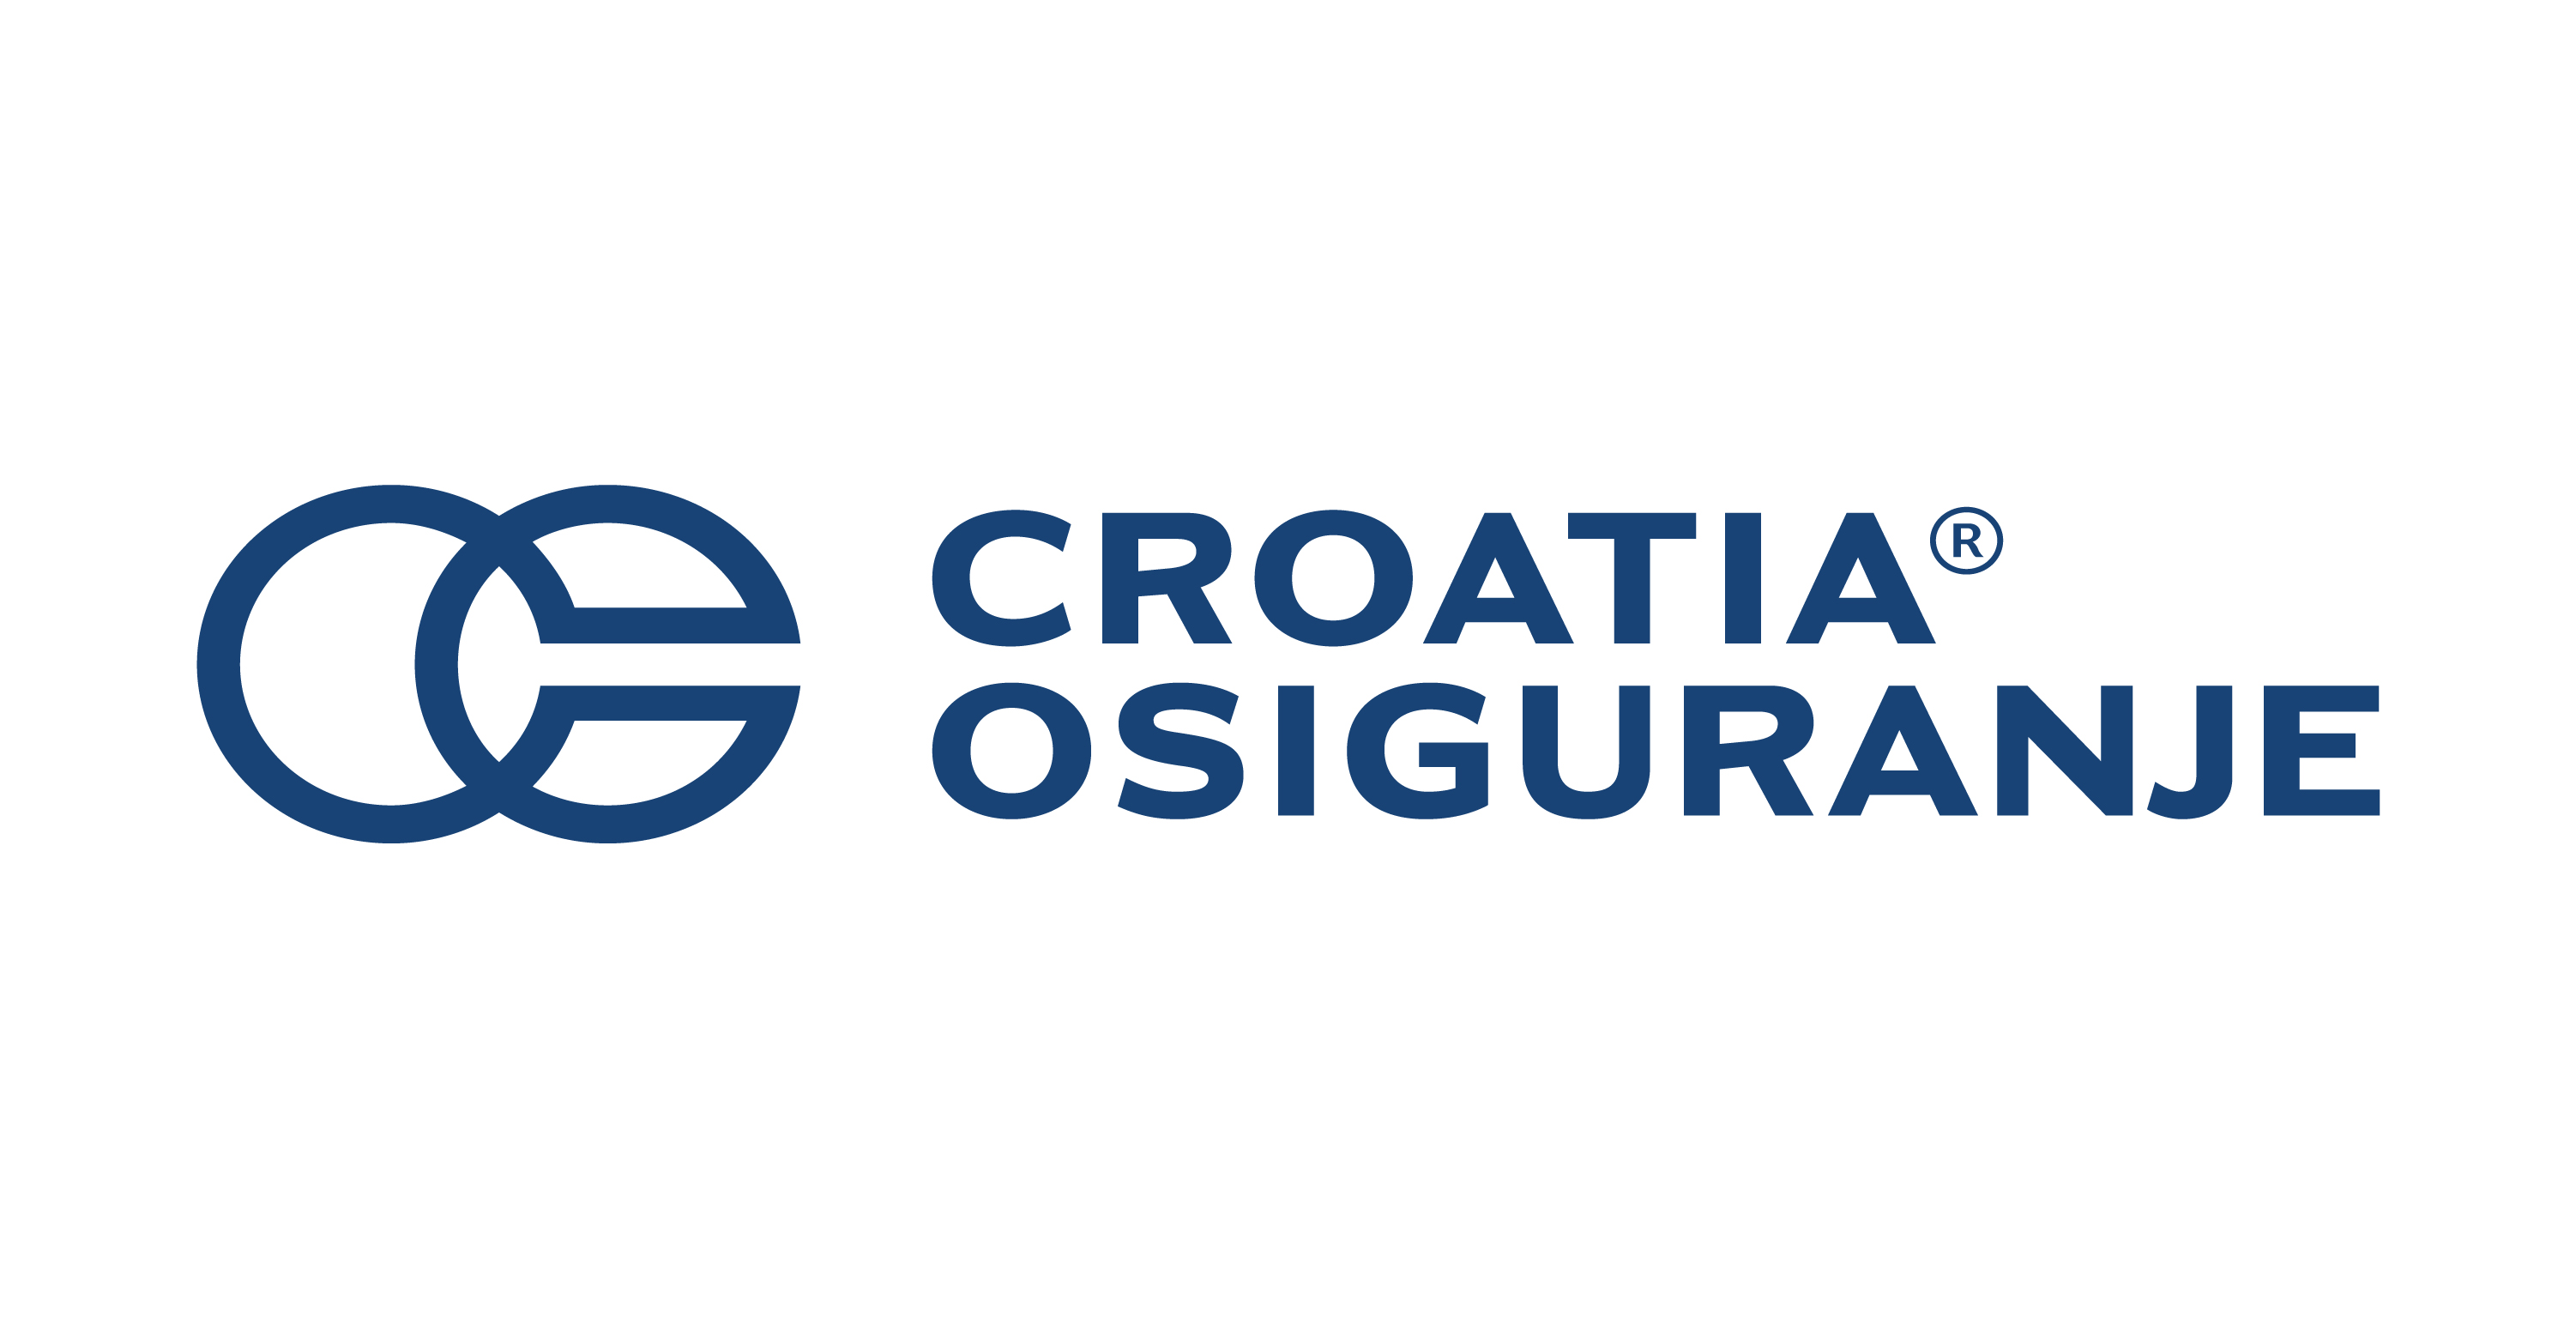 Croatia osiguranje - dobrovoljno zdravstveno osiguranje za djelatnost fiz. terapije i rehabilitacije